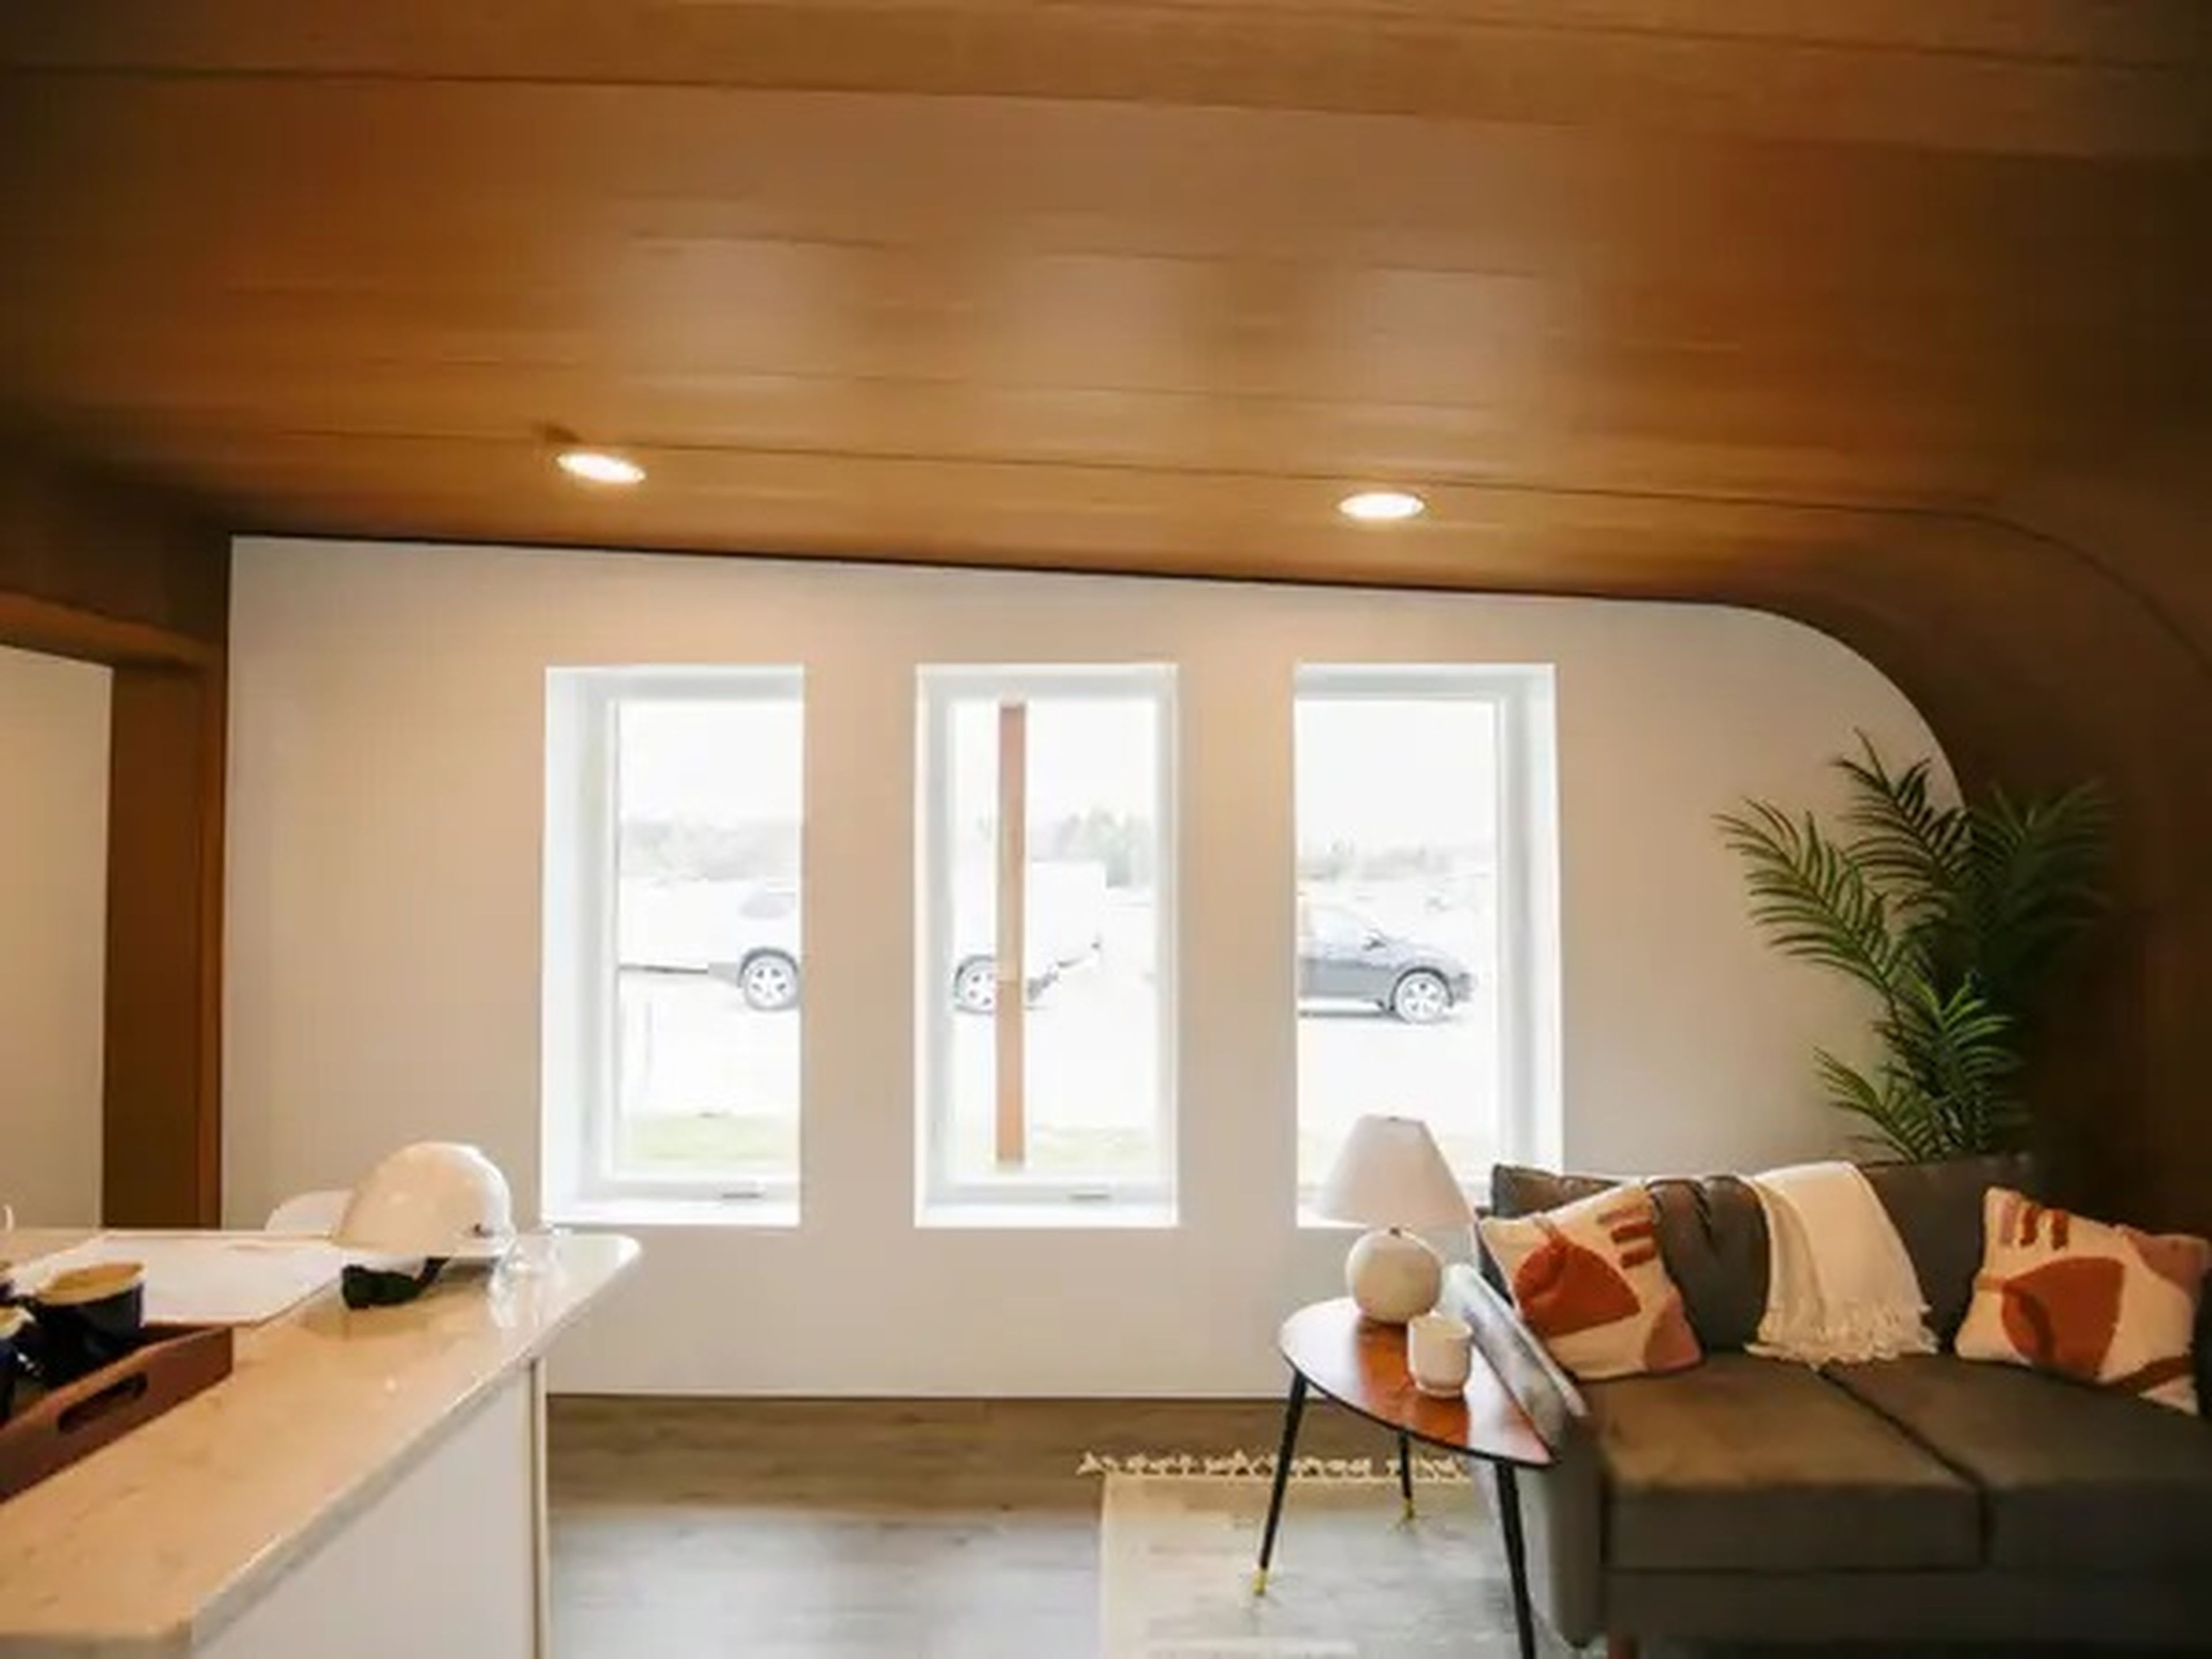 La sala de estar de la vivienda en 3D desde otra perspectiva.